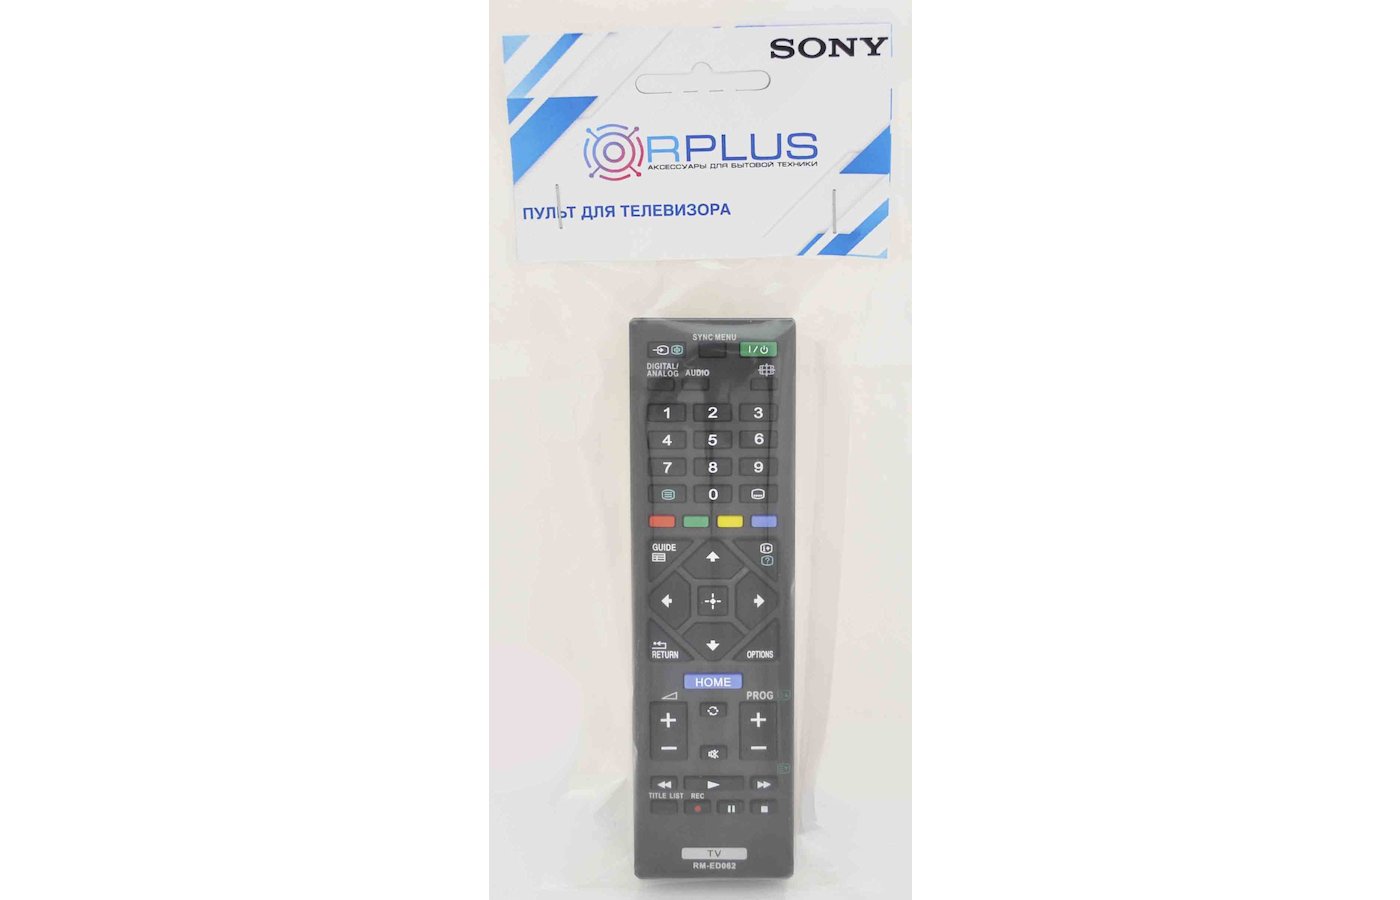 Описание пульт для телевизора. Пульт для телевизора Sony RM-ed062. Ed062 пульт. RM-ed062 пульт. Пульт для Sony RM-ed062 LCD TV.